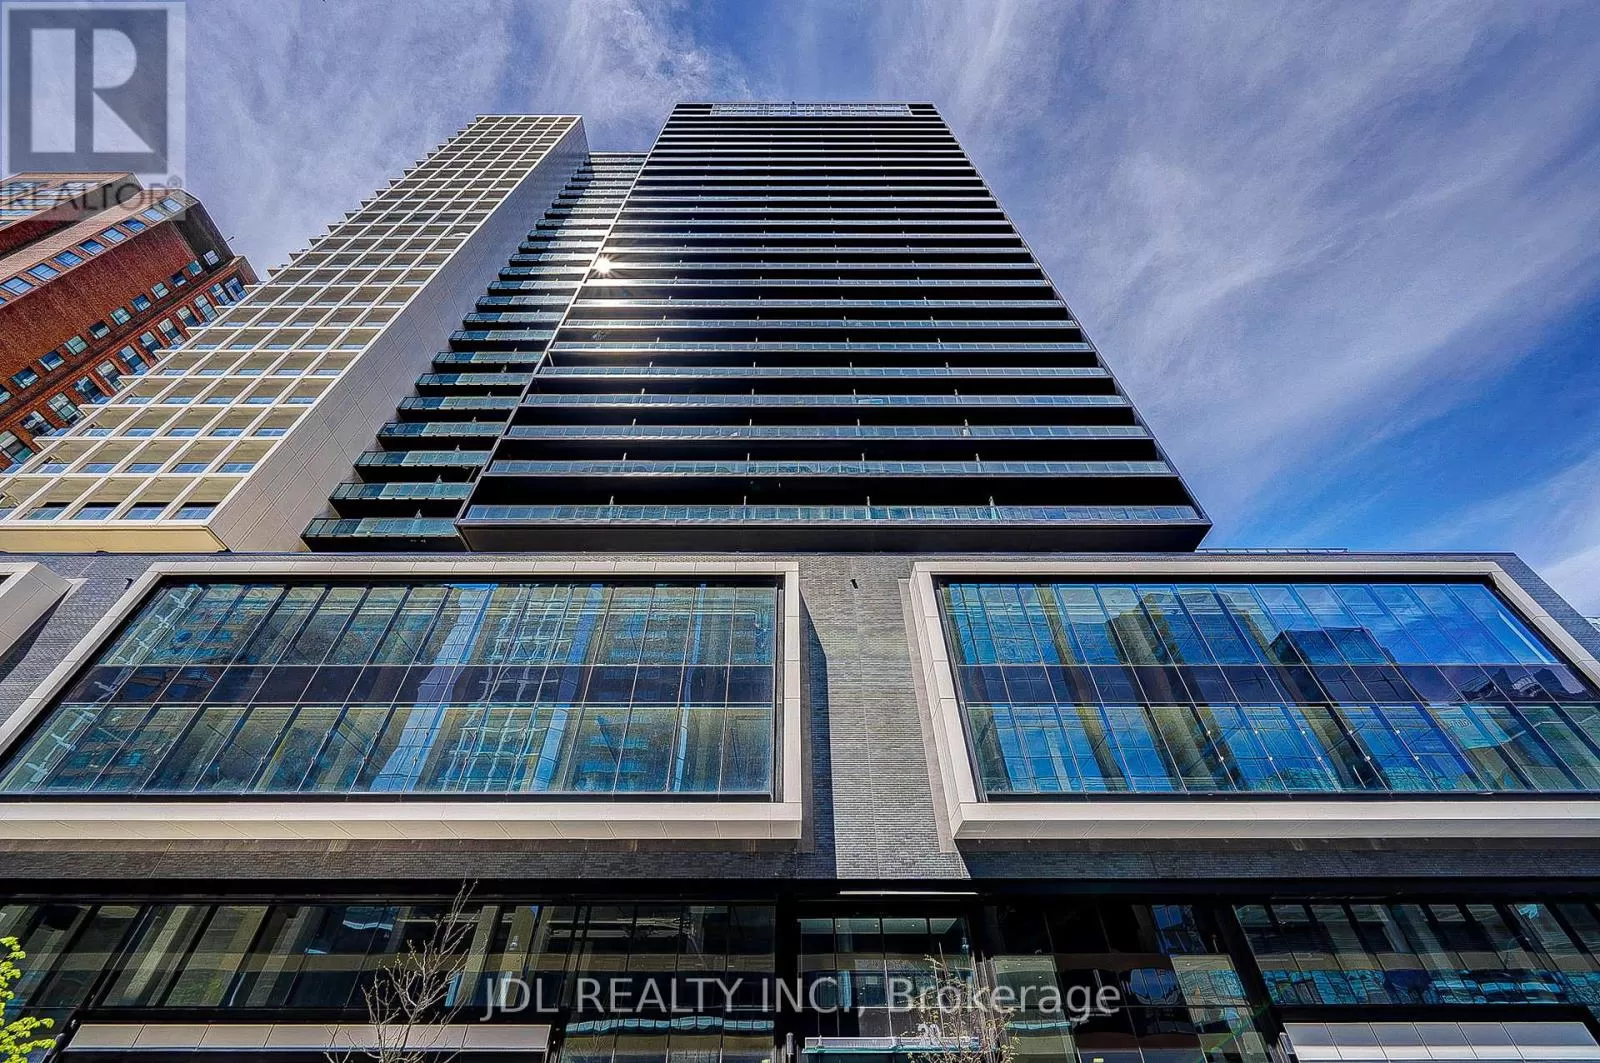 Apartment for rent: 1503 - 20 Edward Street, Toronto, Ontario M5G 0C5